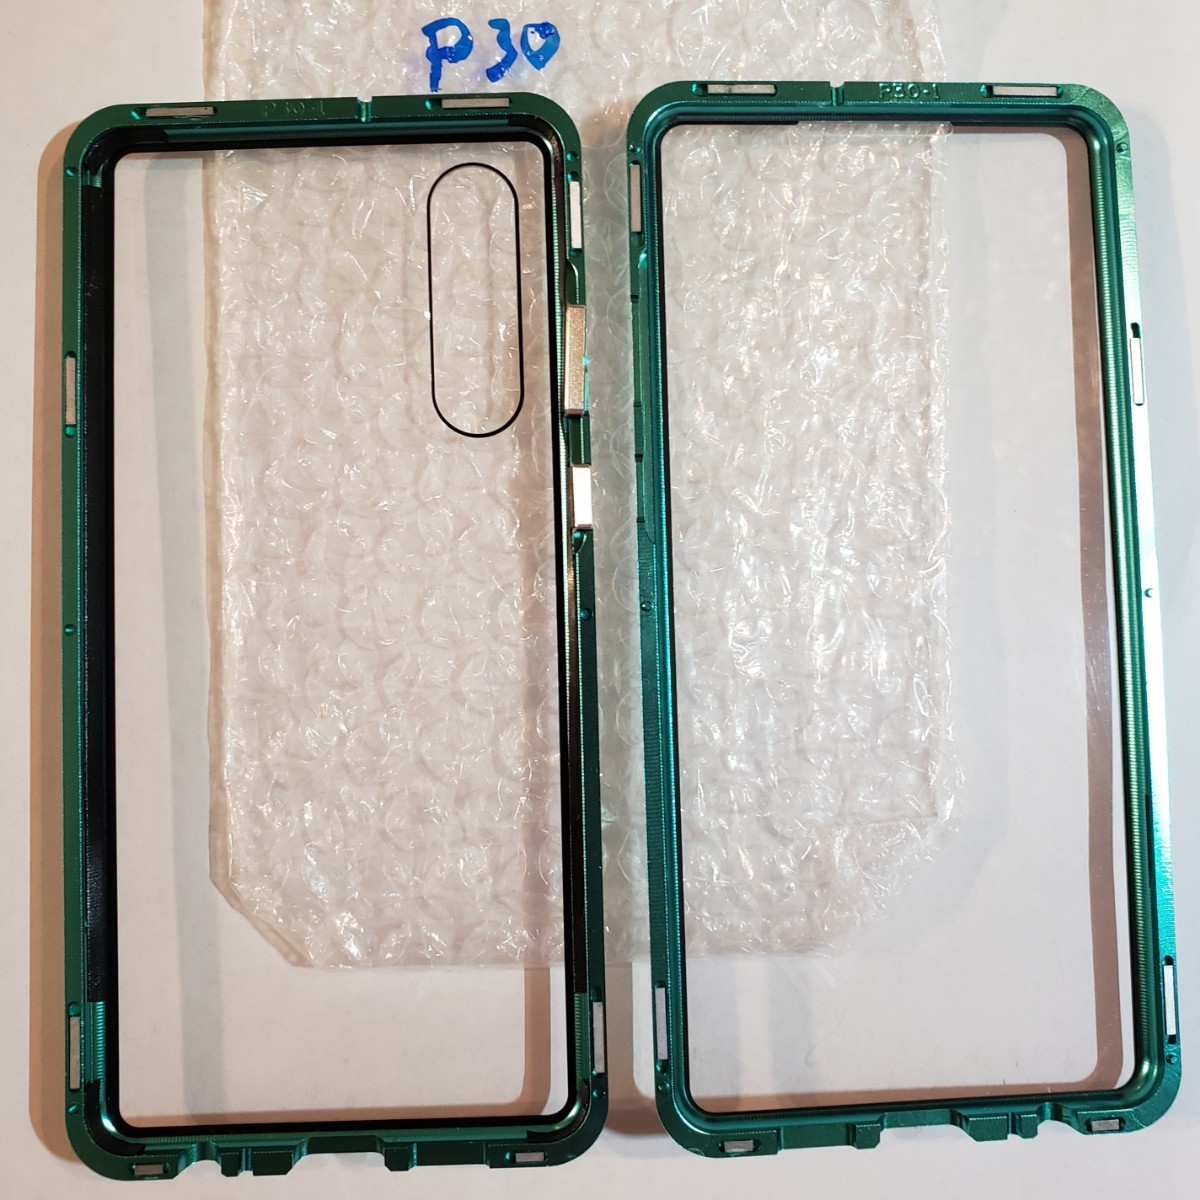 HUAWEI P30 緑/緑 両面ガラスアルミフレー厶フルカバーケース